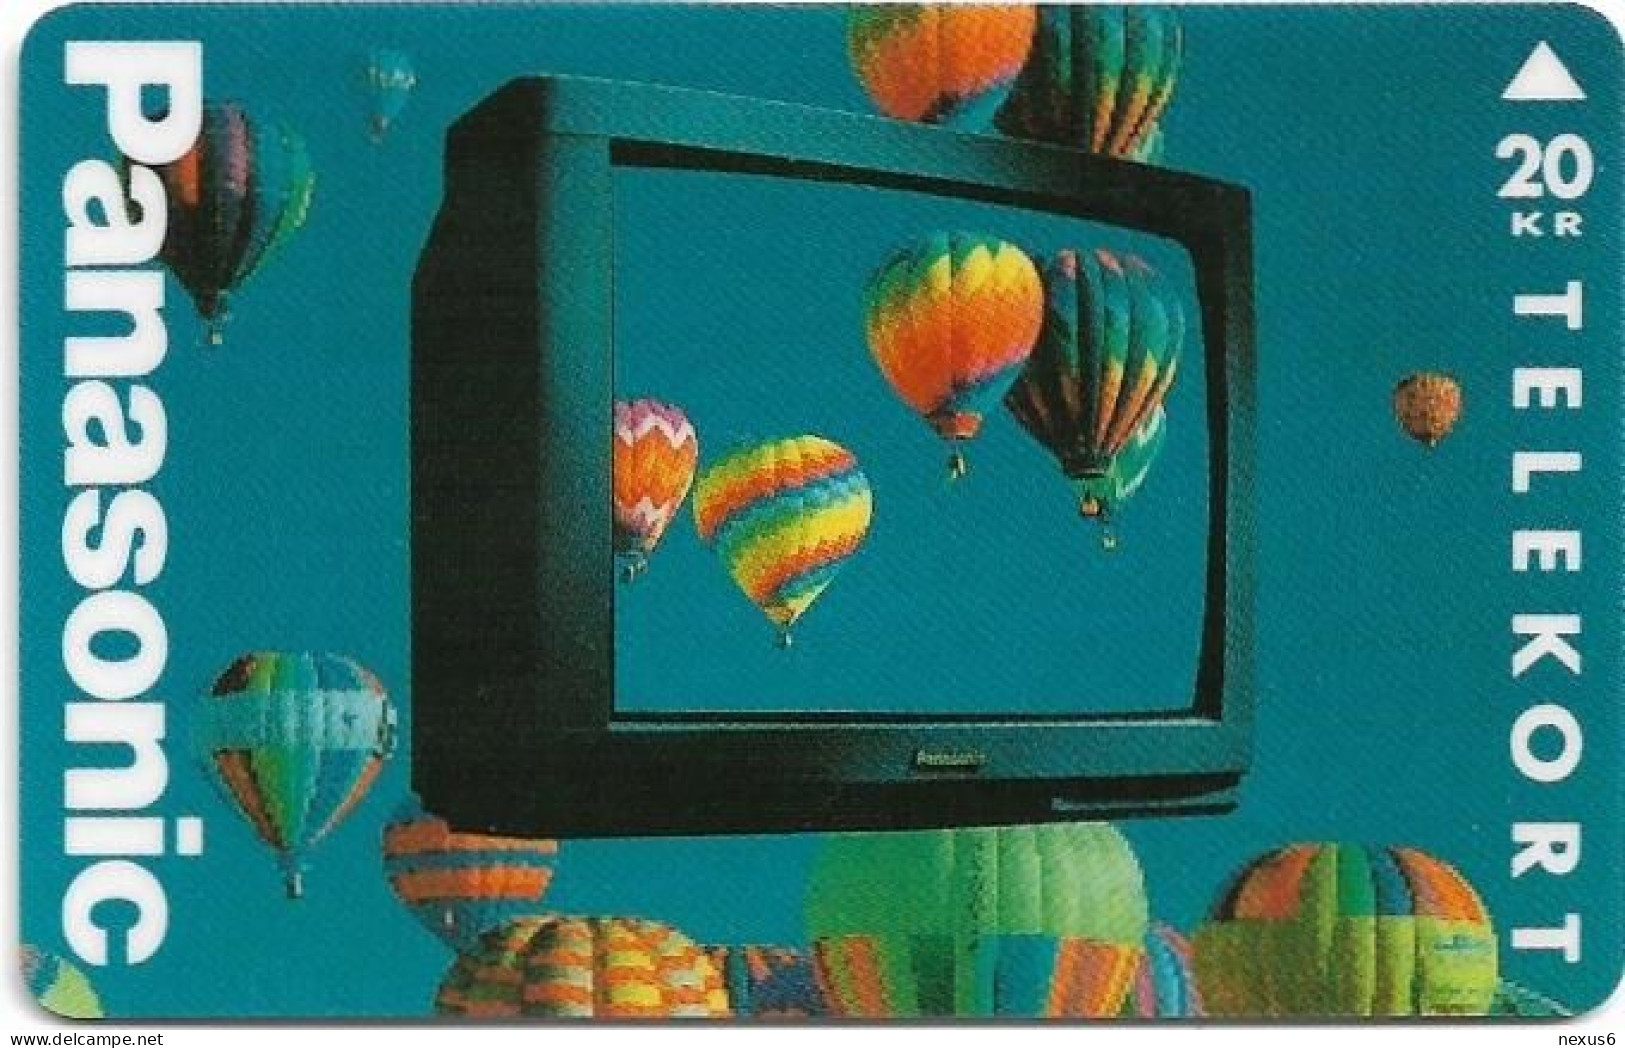 Denmark - KTAS - Panasonic TV - TDKP080 - 04.1994, 2.000ex, 20kr, Used - Dänemark